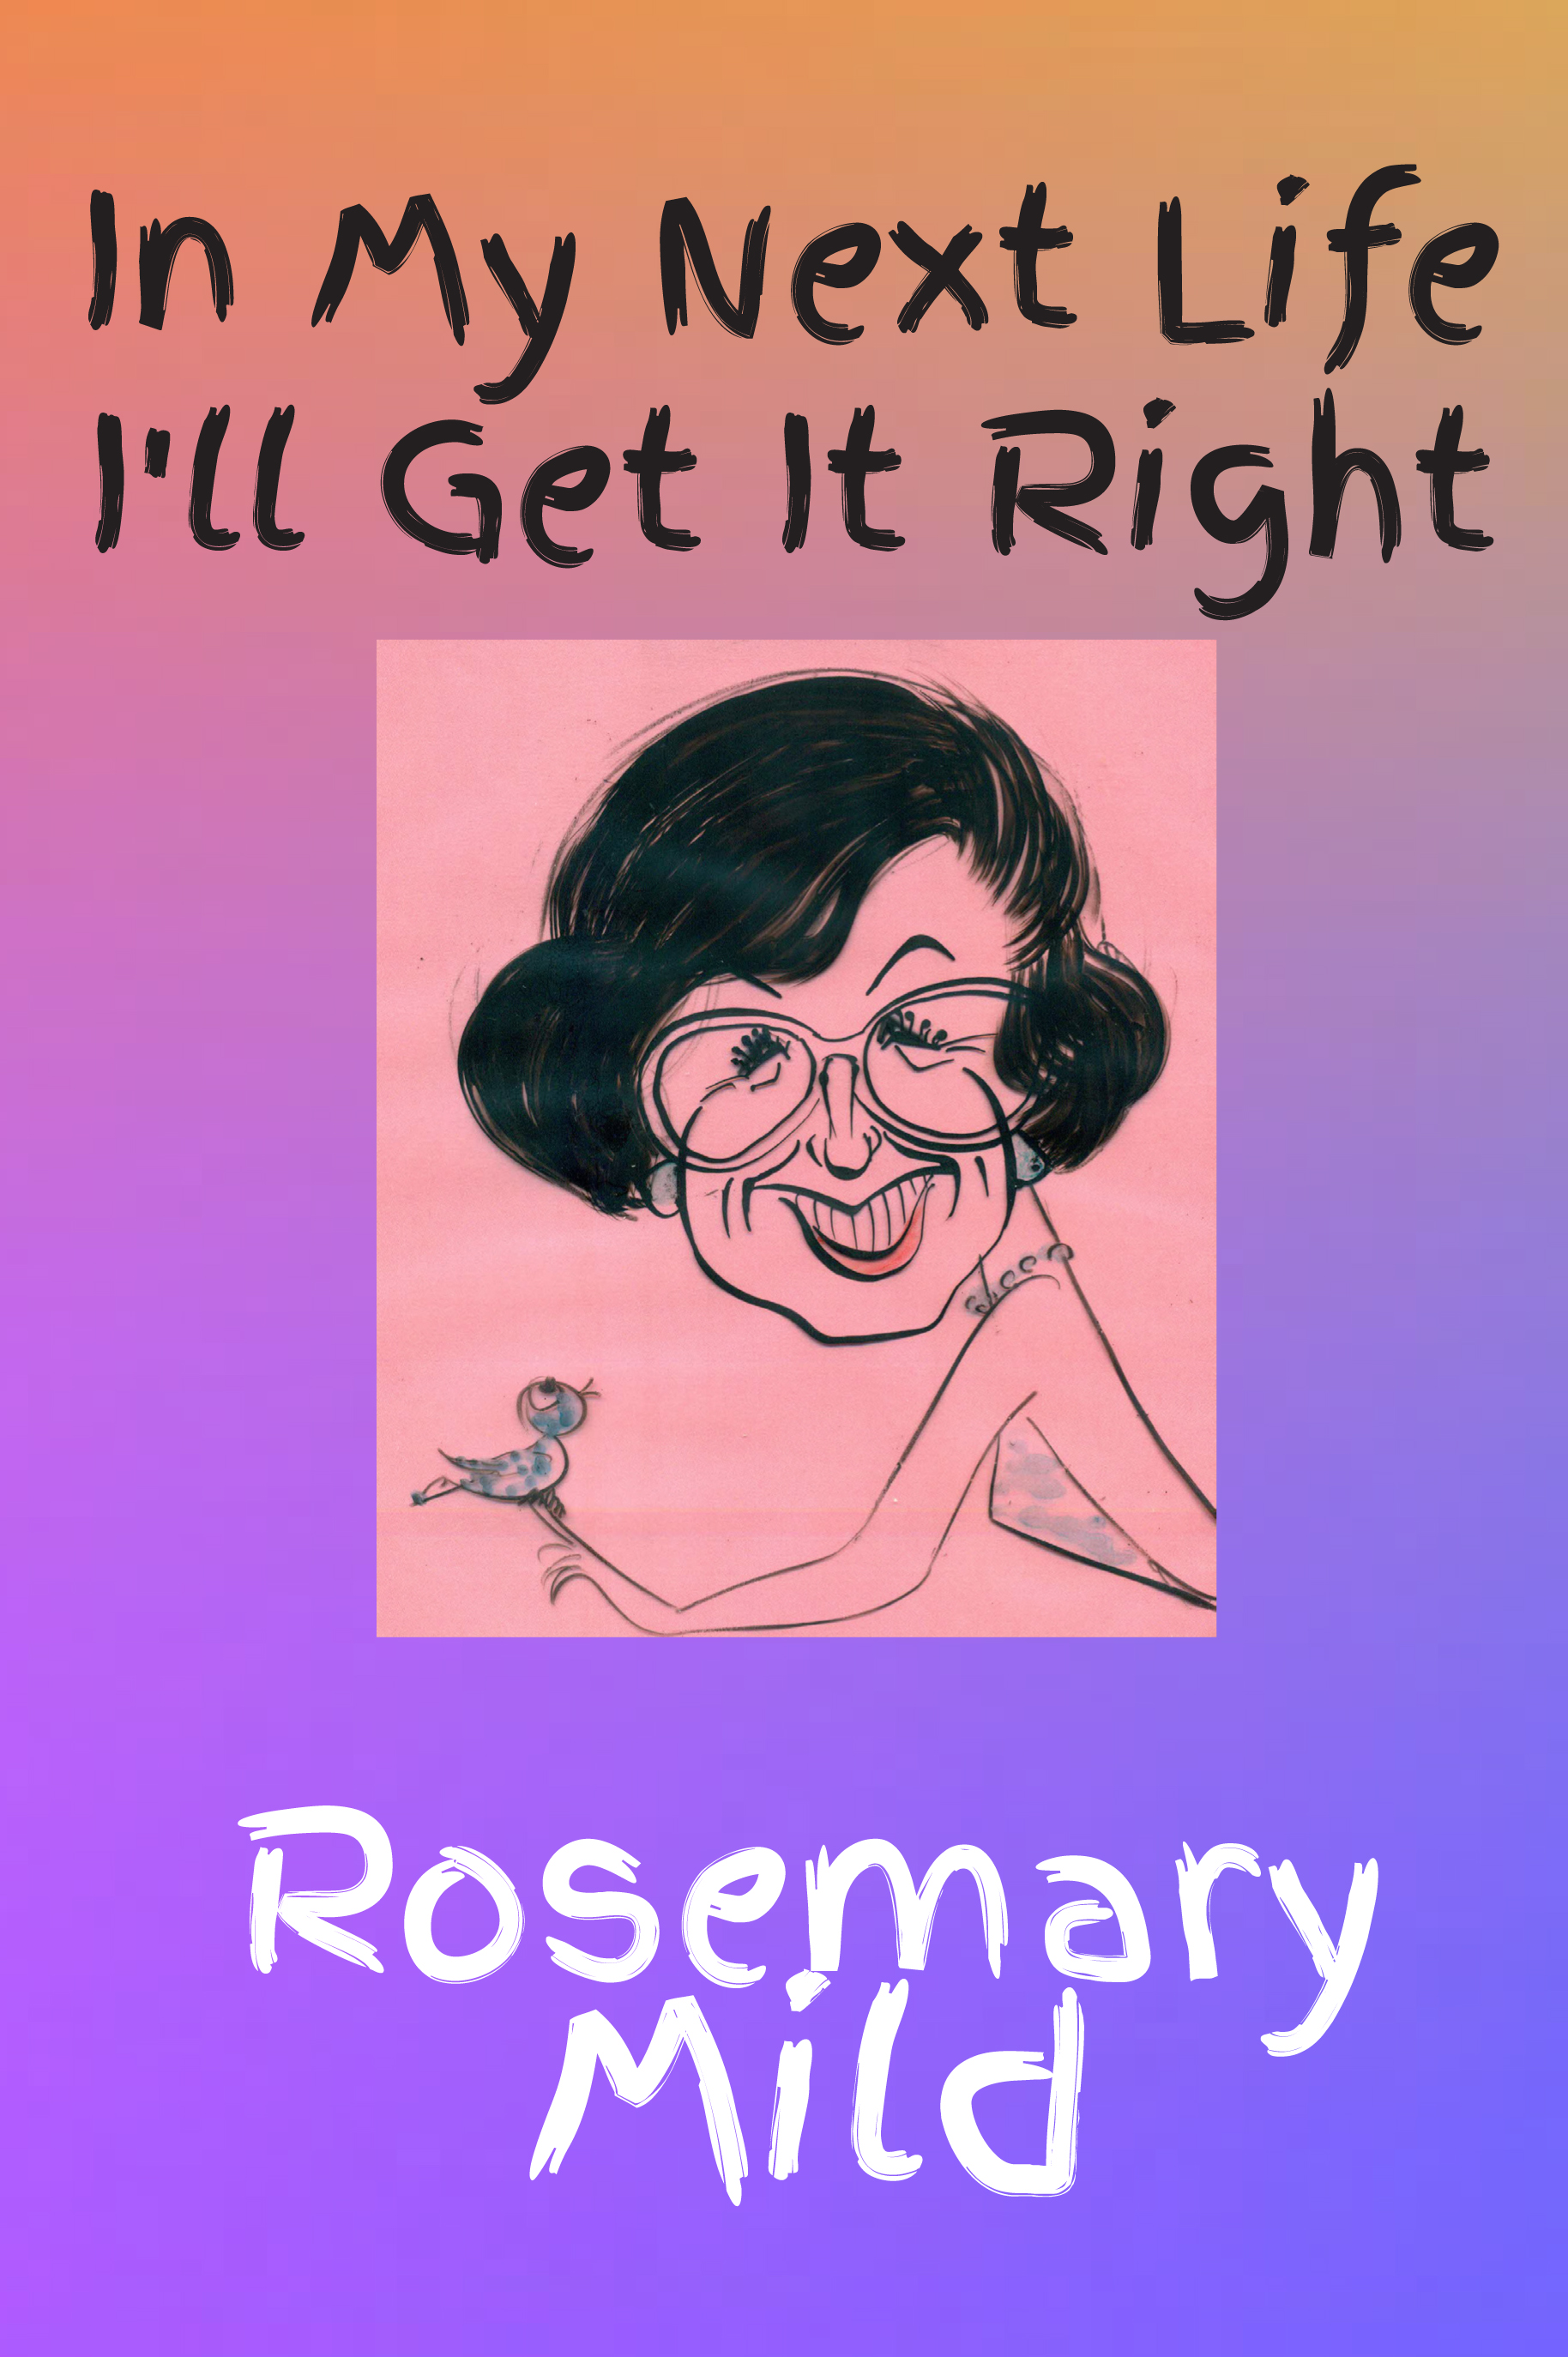 <i><b>In My Next Life I'll Get It Right</b></i> by Rosemary Mild